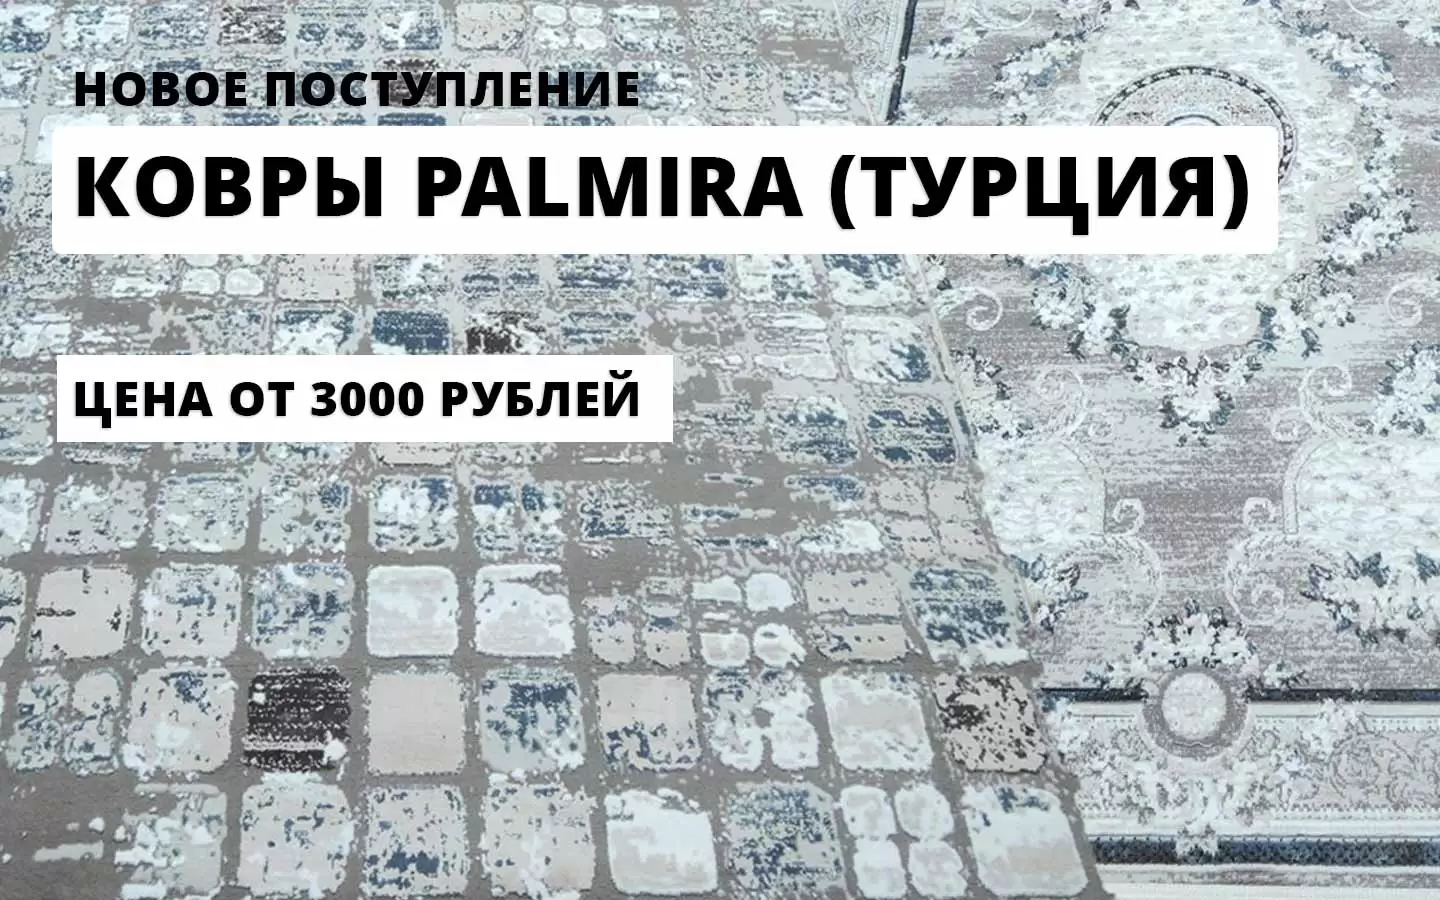 пополнение склада ковров - новая коллекция Palmira